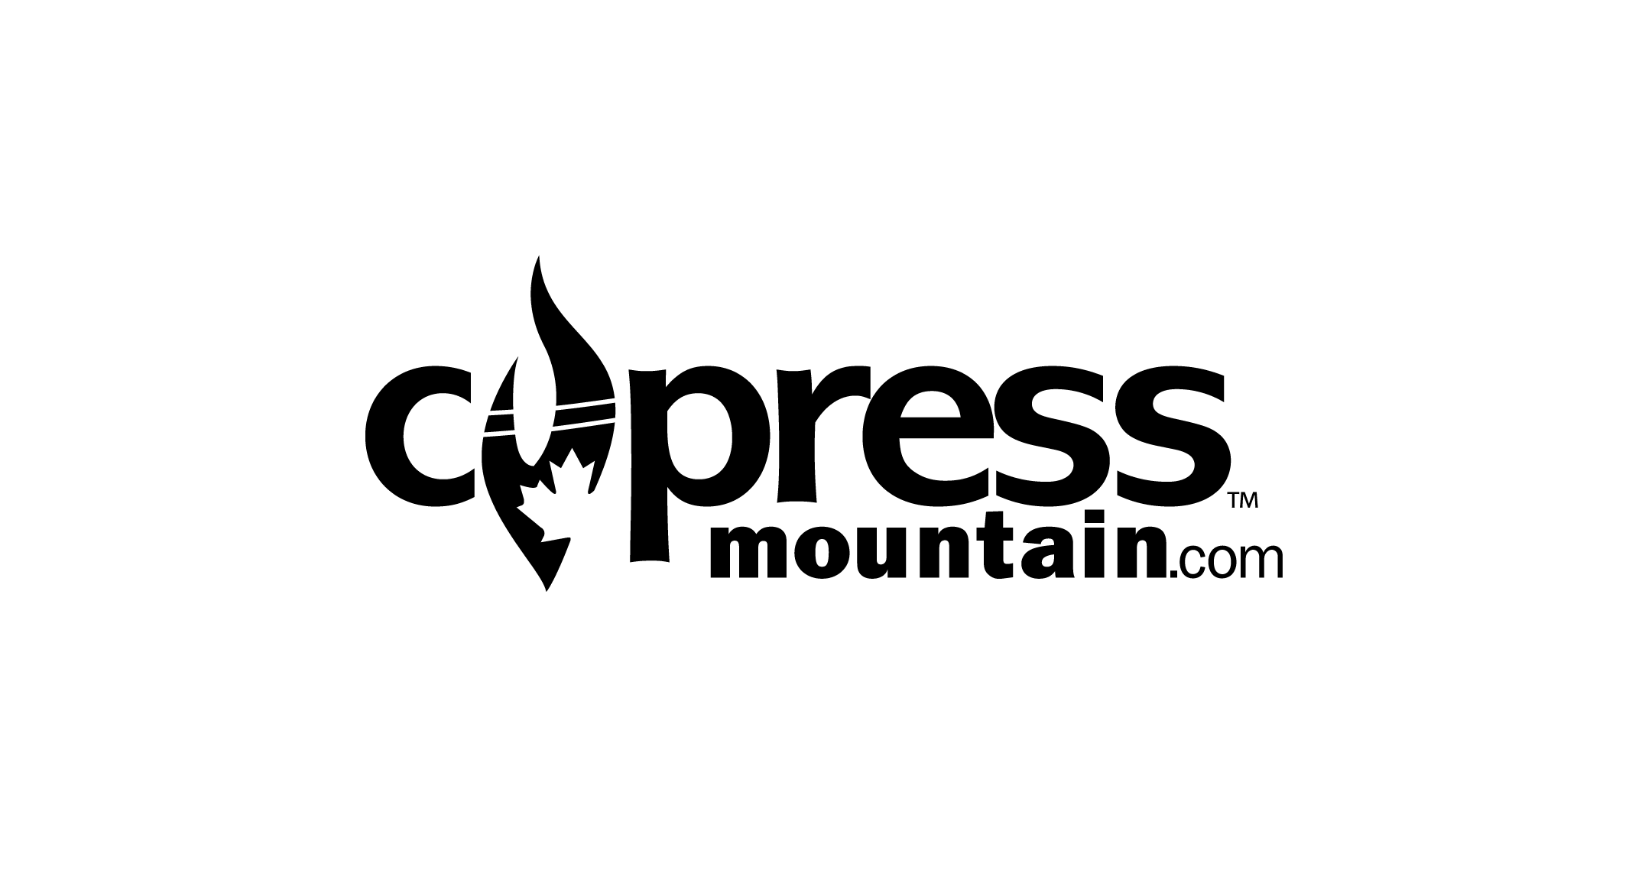 cypress montain logo.